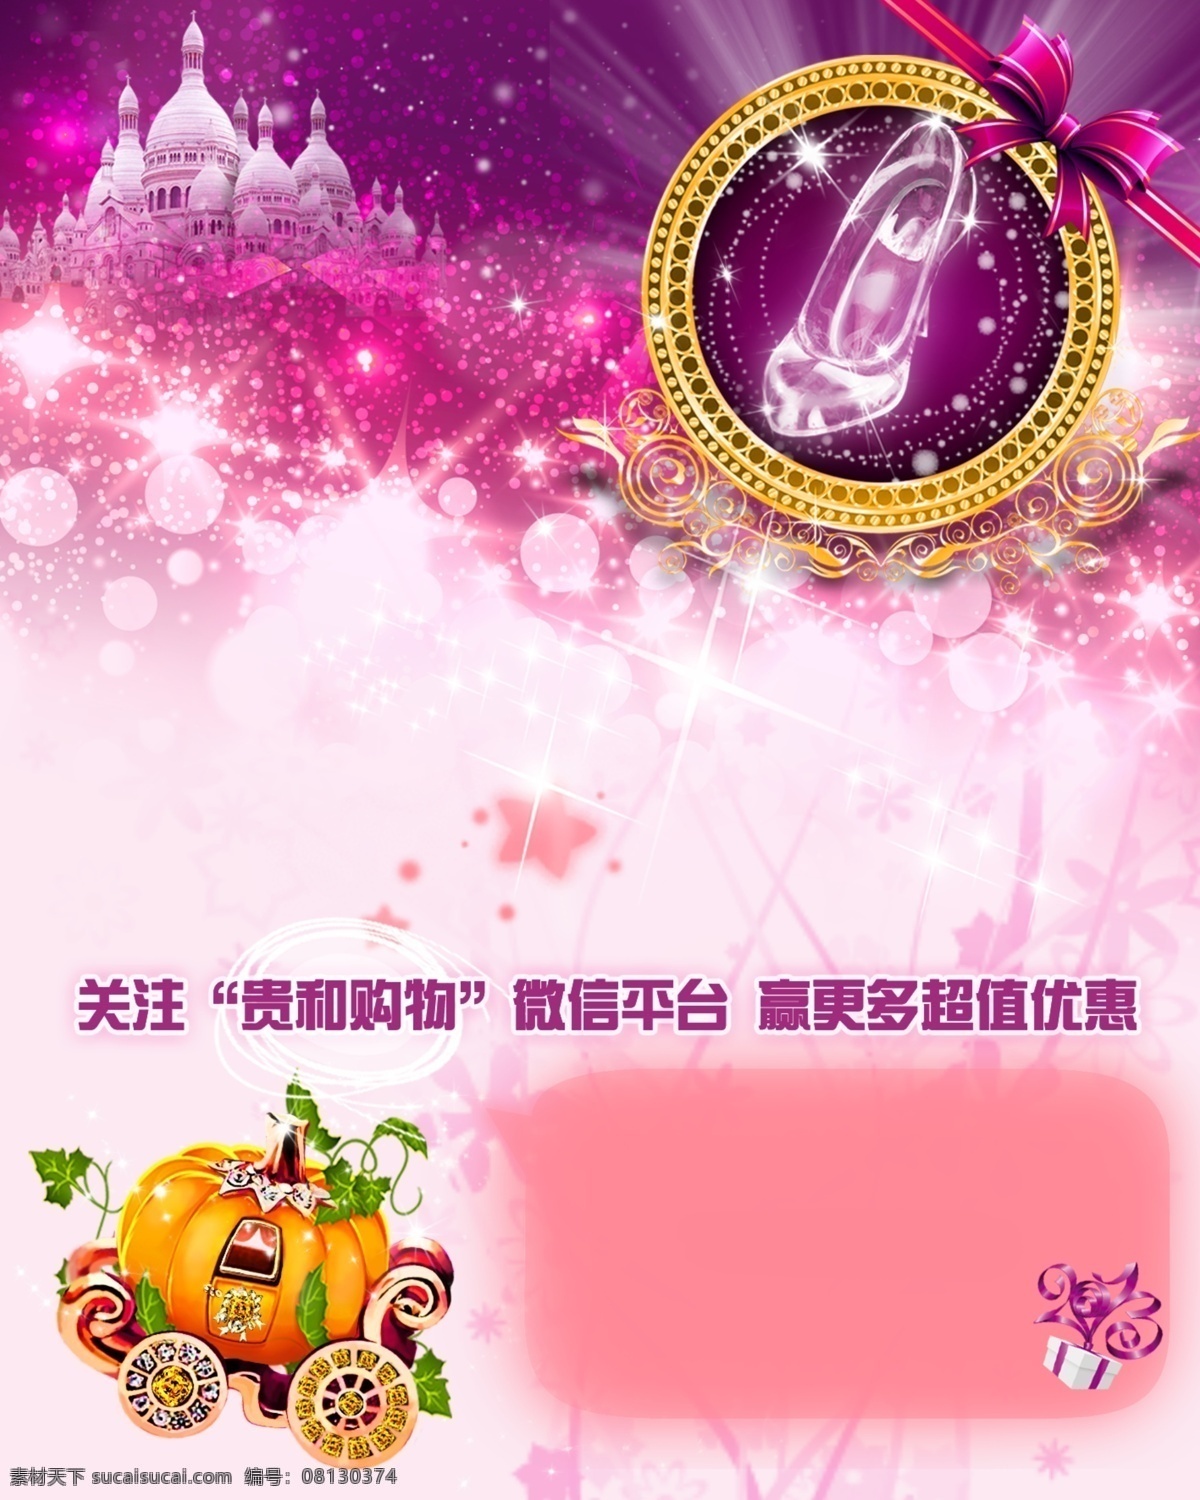 南瓜车 海报 水晶鞋 城堡 蝴蝶结 粉色 广告设计模板 源文件